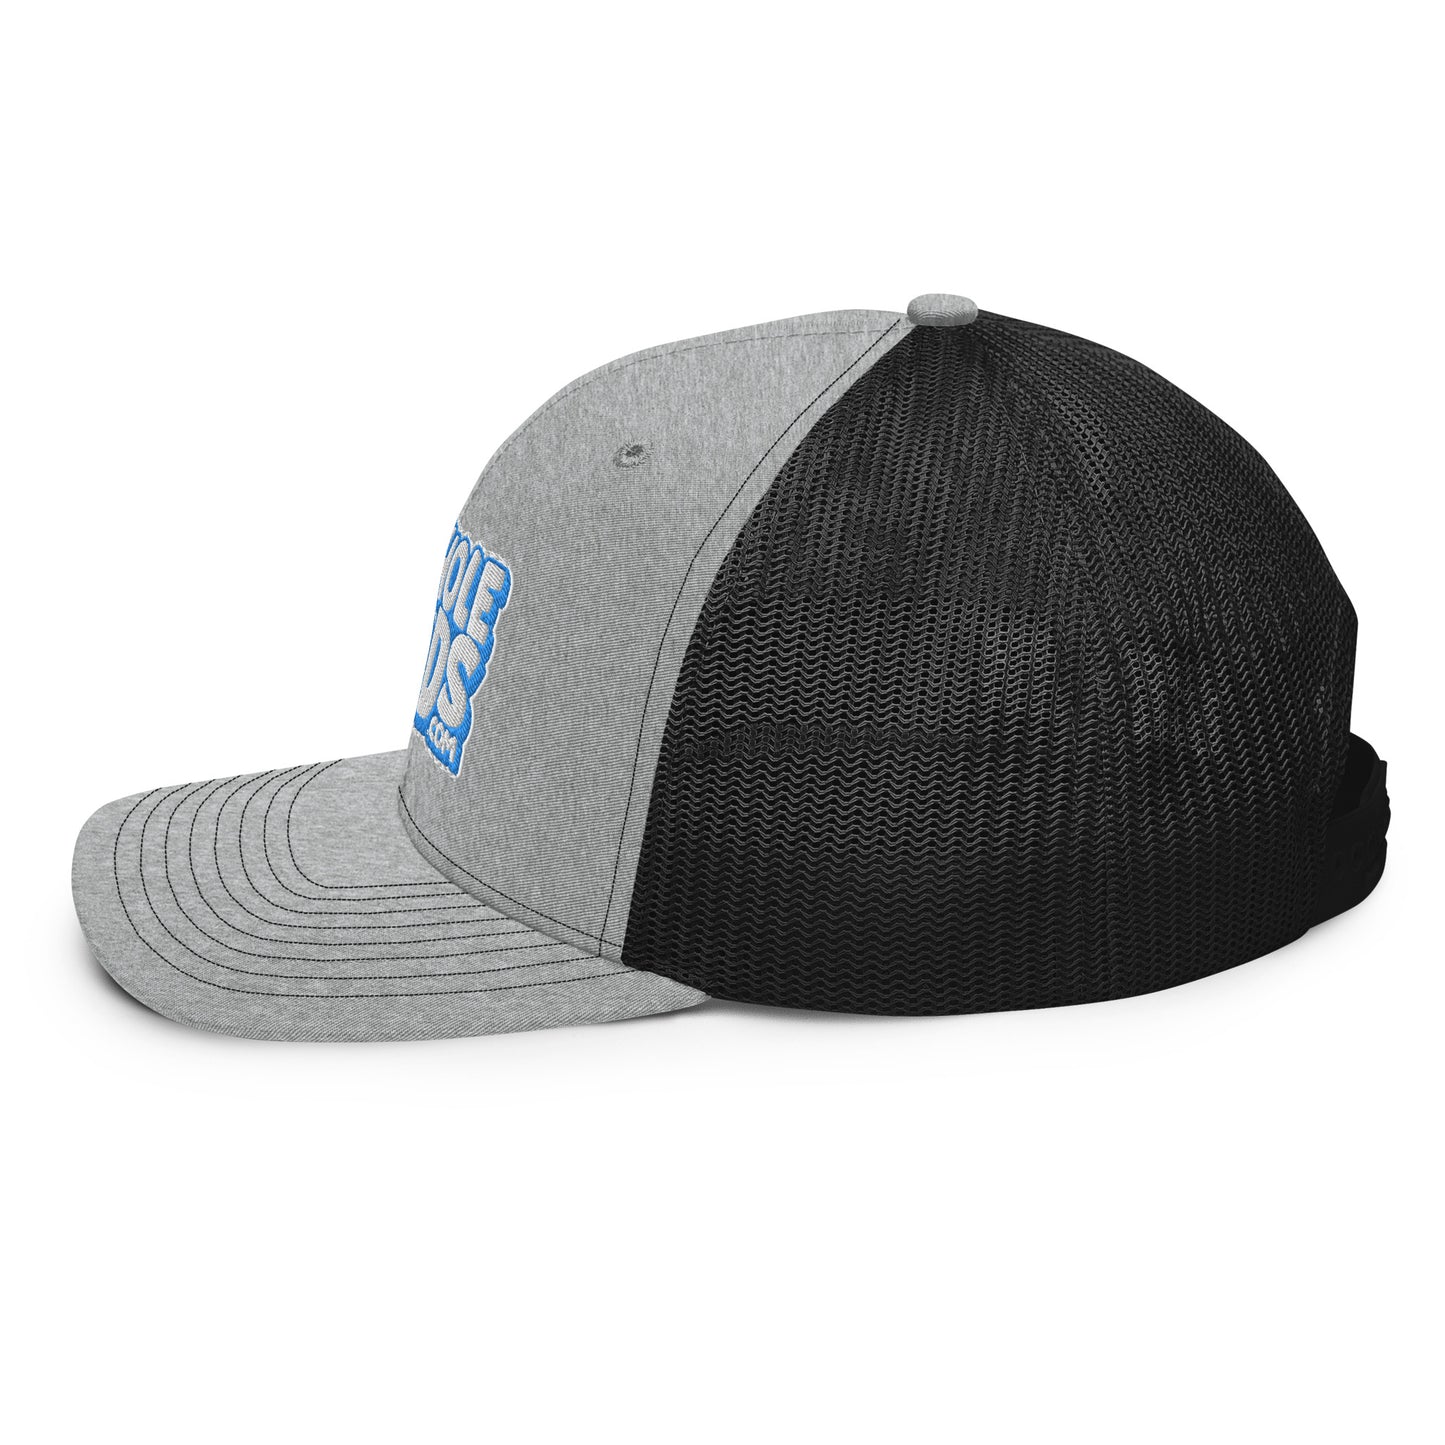 white/light blue nerds logo Richardson 112 snapback Trucker hat